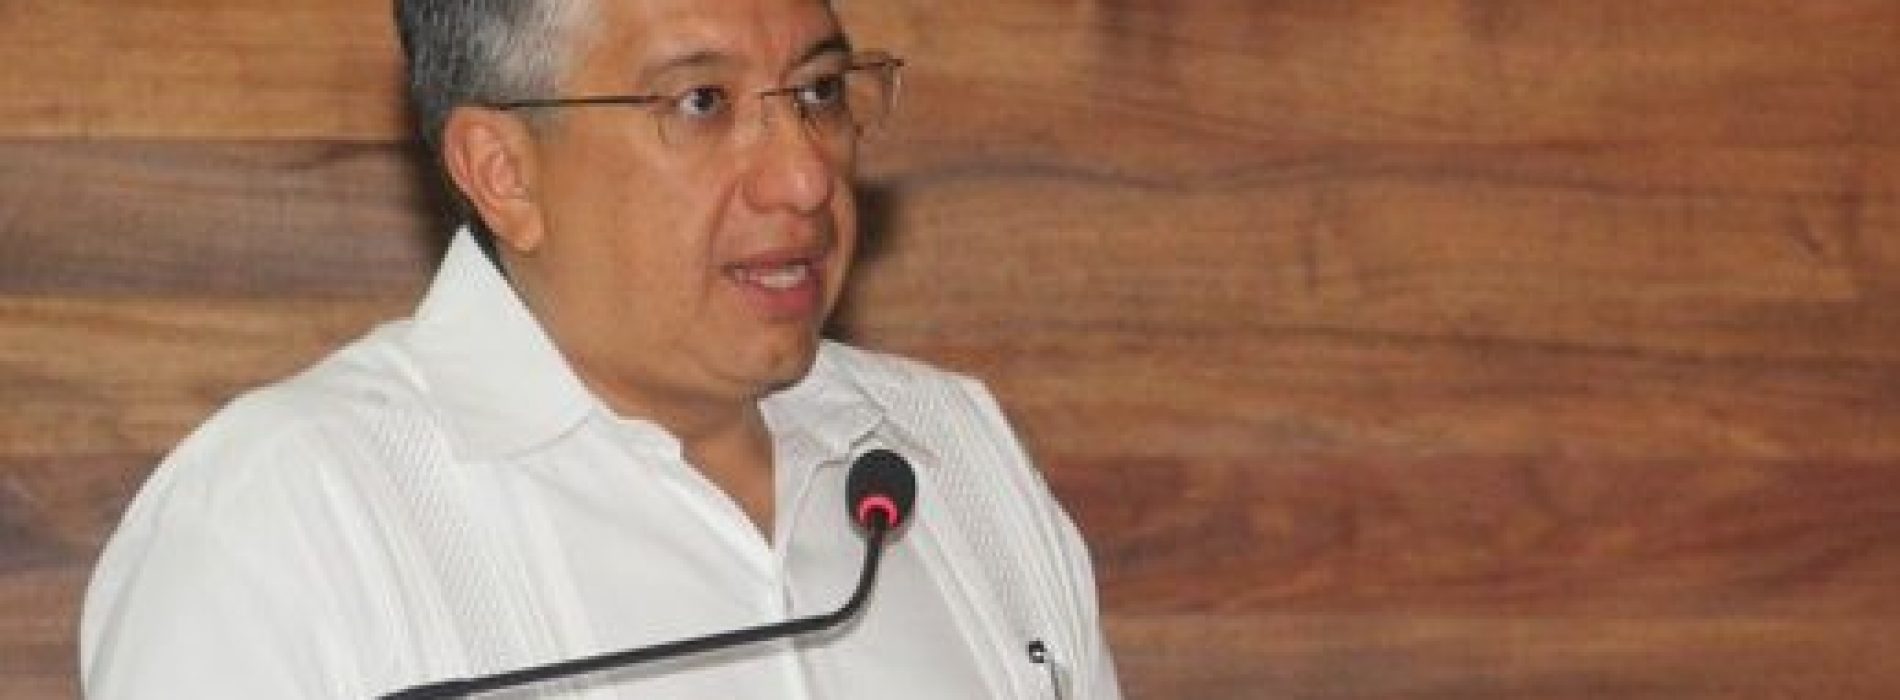 Municipios no han comprobado 900 millones de pesos del ejercicio 2018